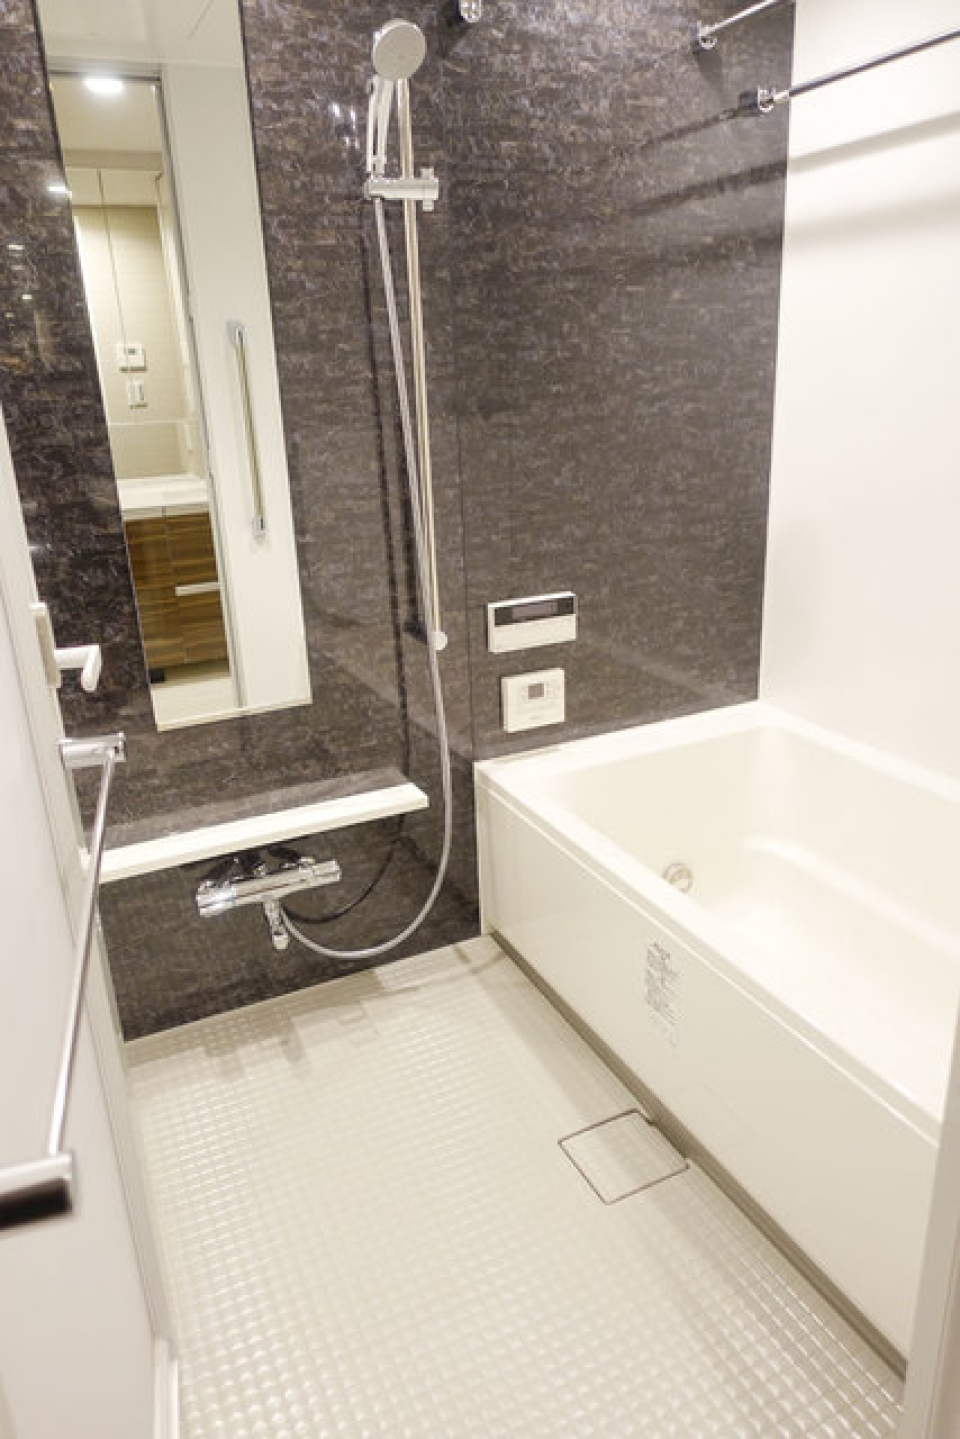 ダークトーンのパネルが落ち着いた雰囲気の浴室を演出しています。※写真は同タイプ住戸です。